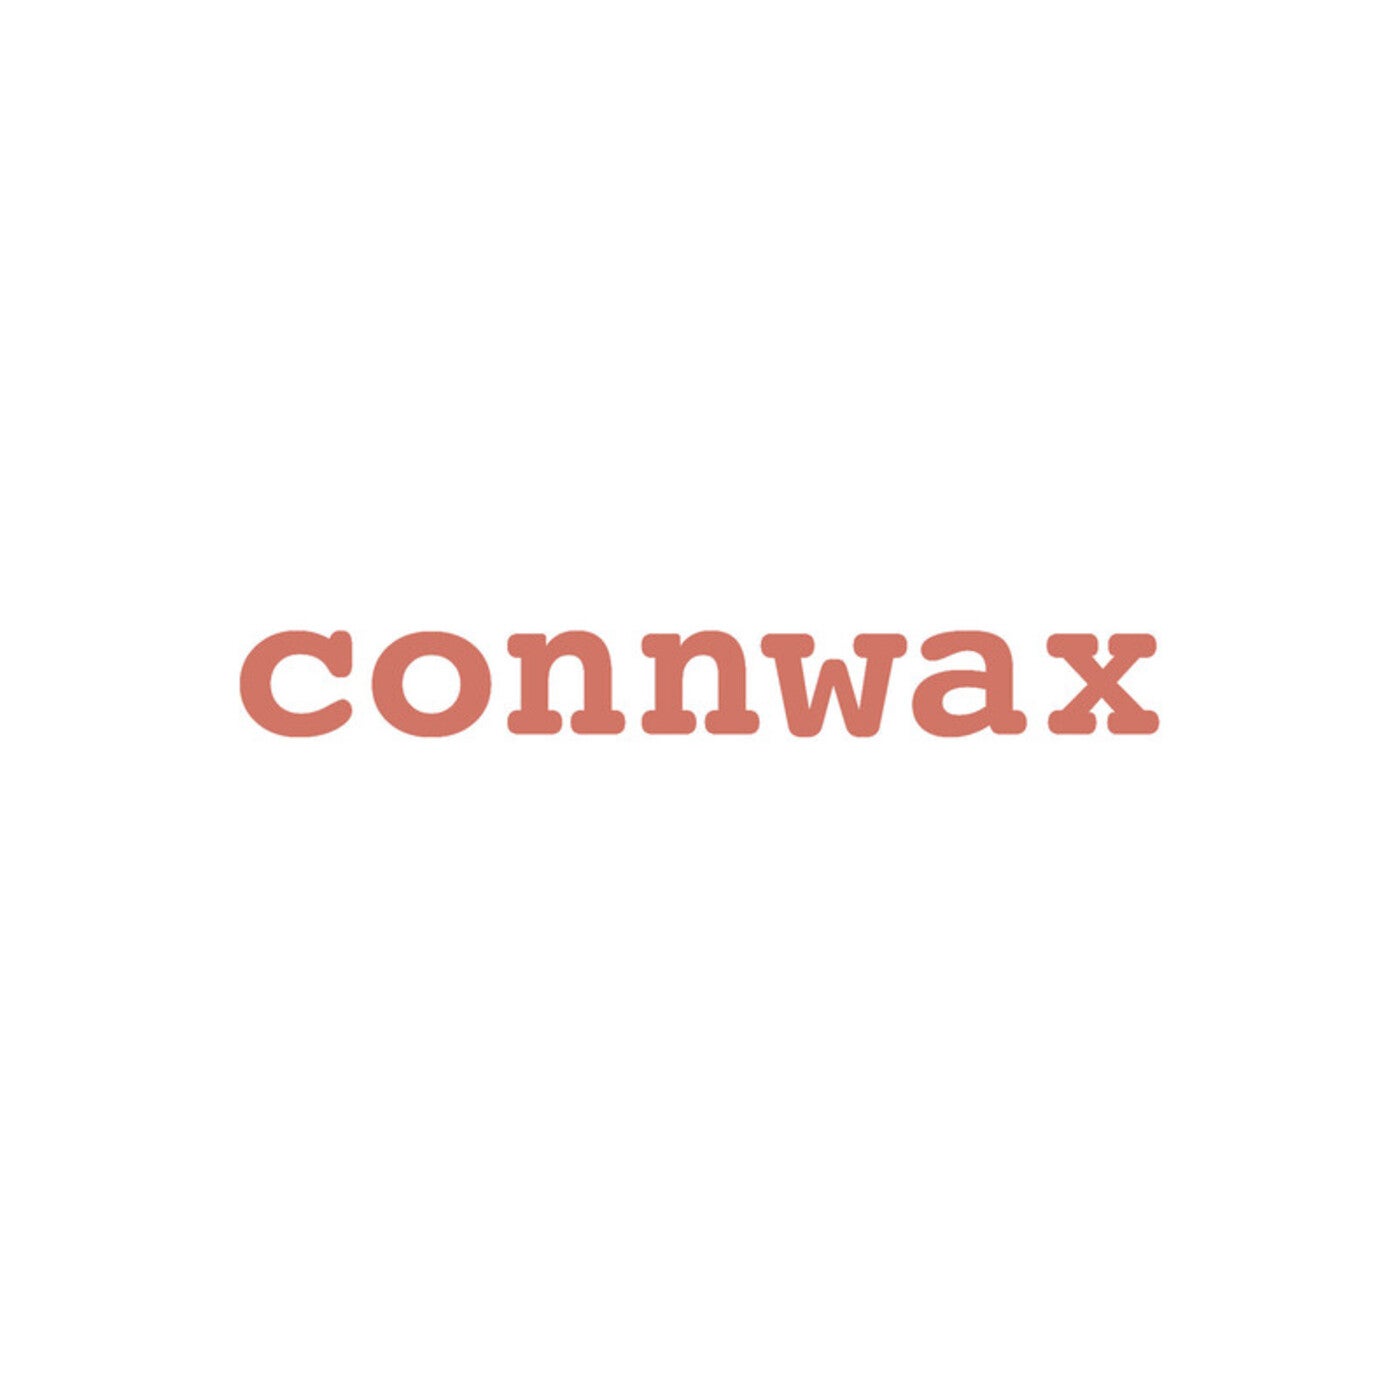 connwax 07